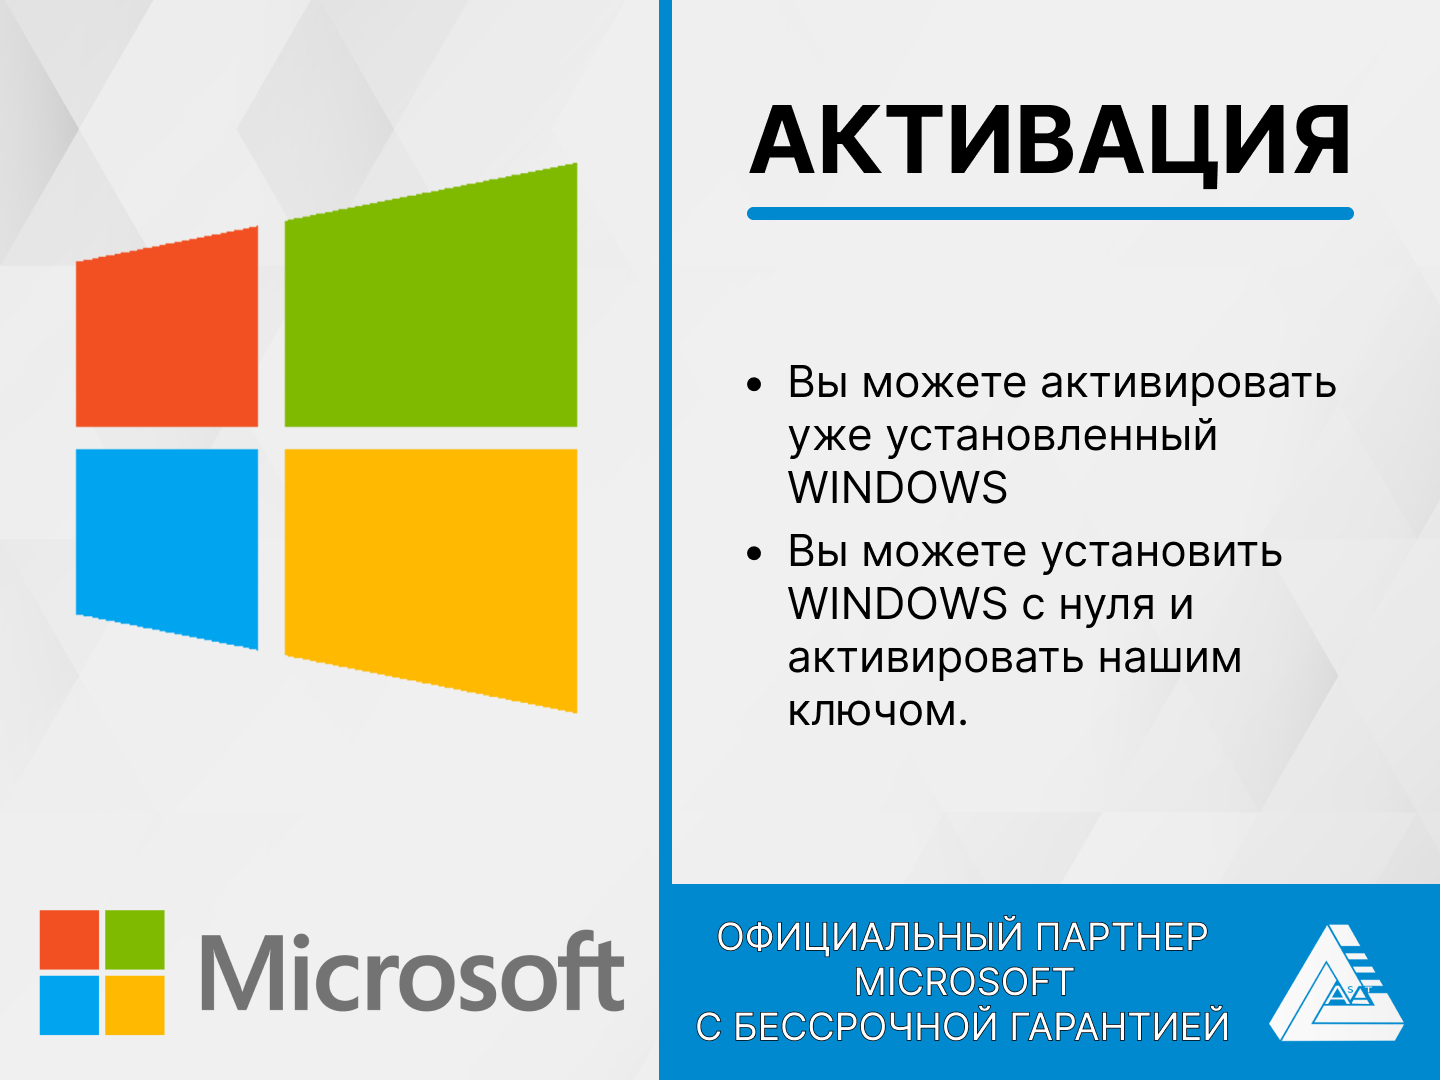 Microsoft WINDOWS 10 HOME с привязкой к устройству. Русский язык